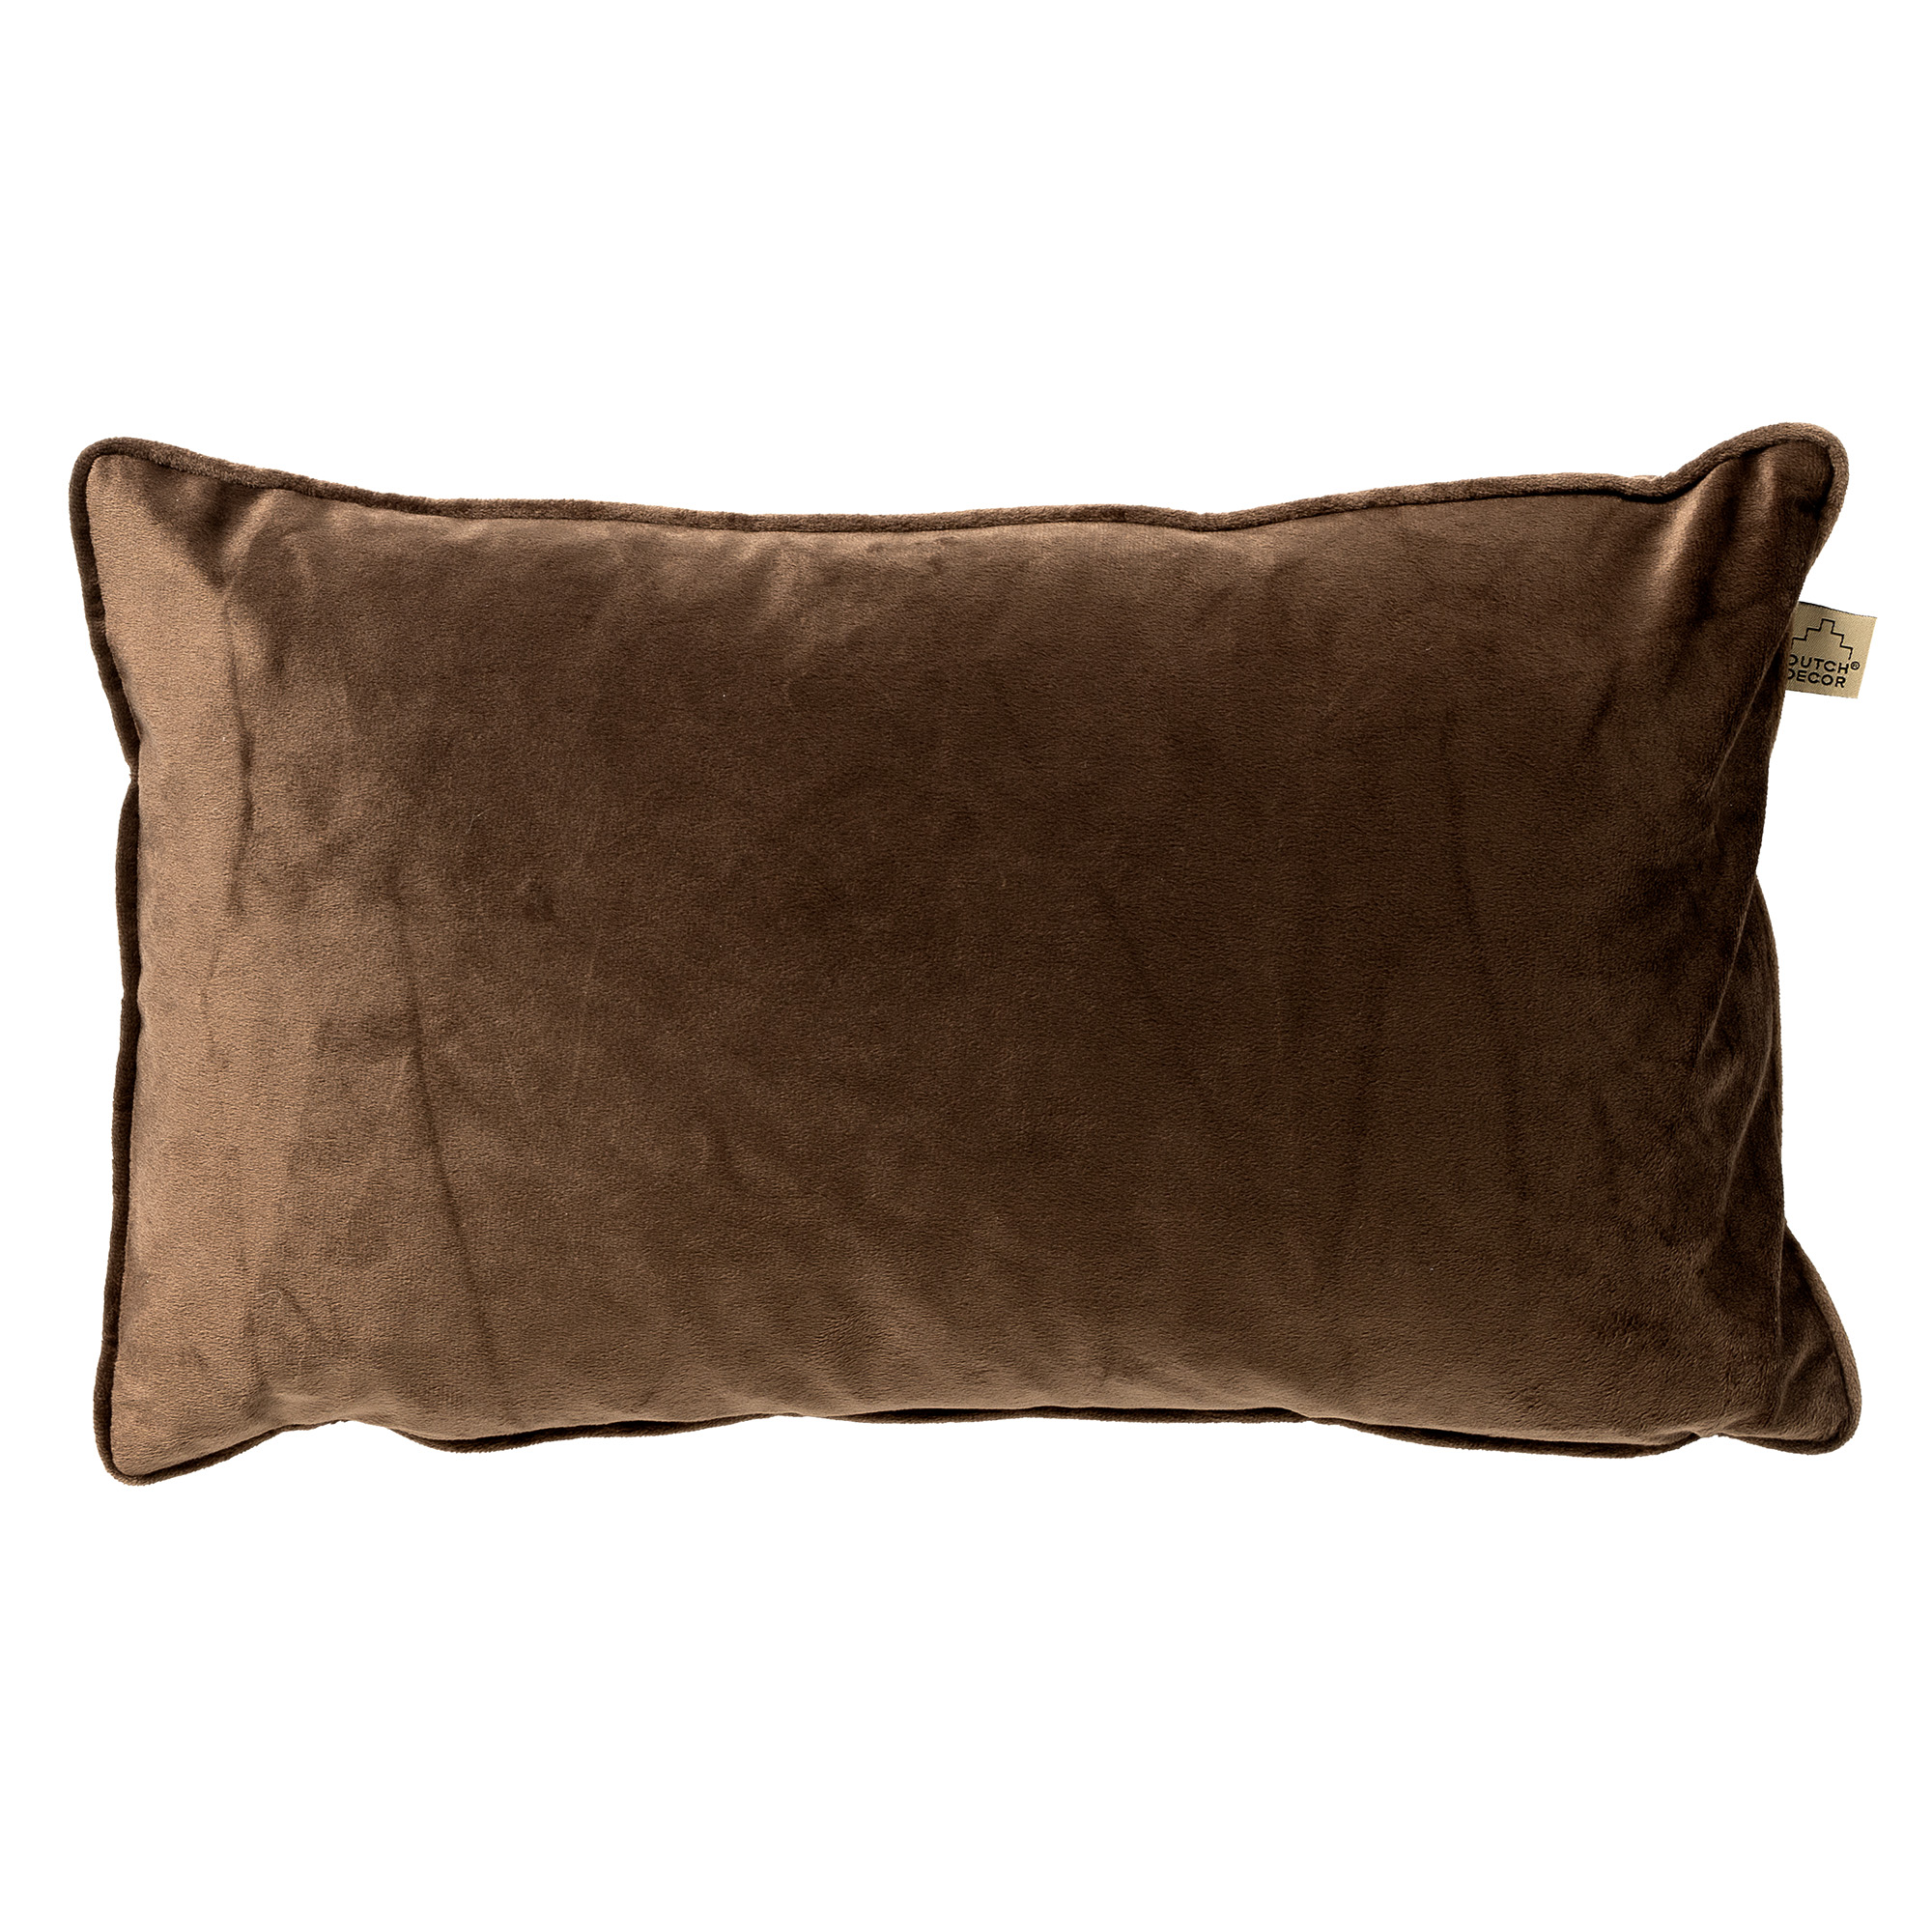 FINN - Cushion 30x50 cm - Chocolate Martini - brown